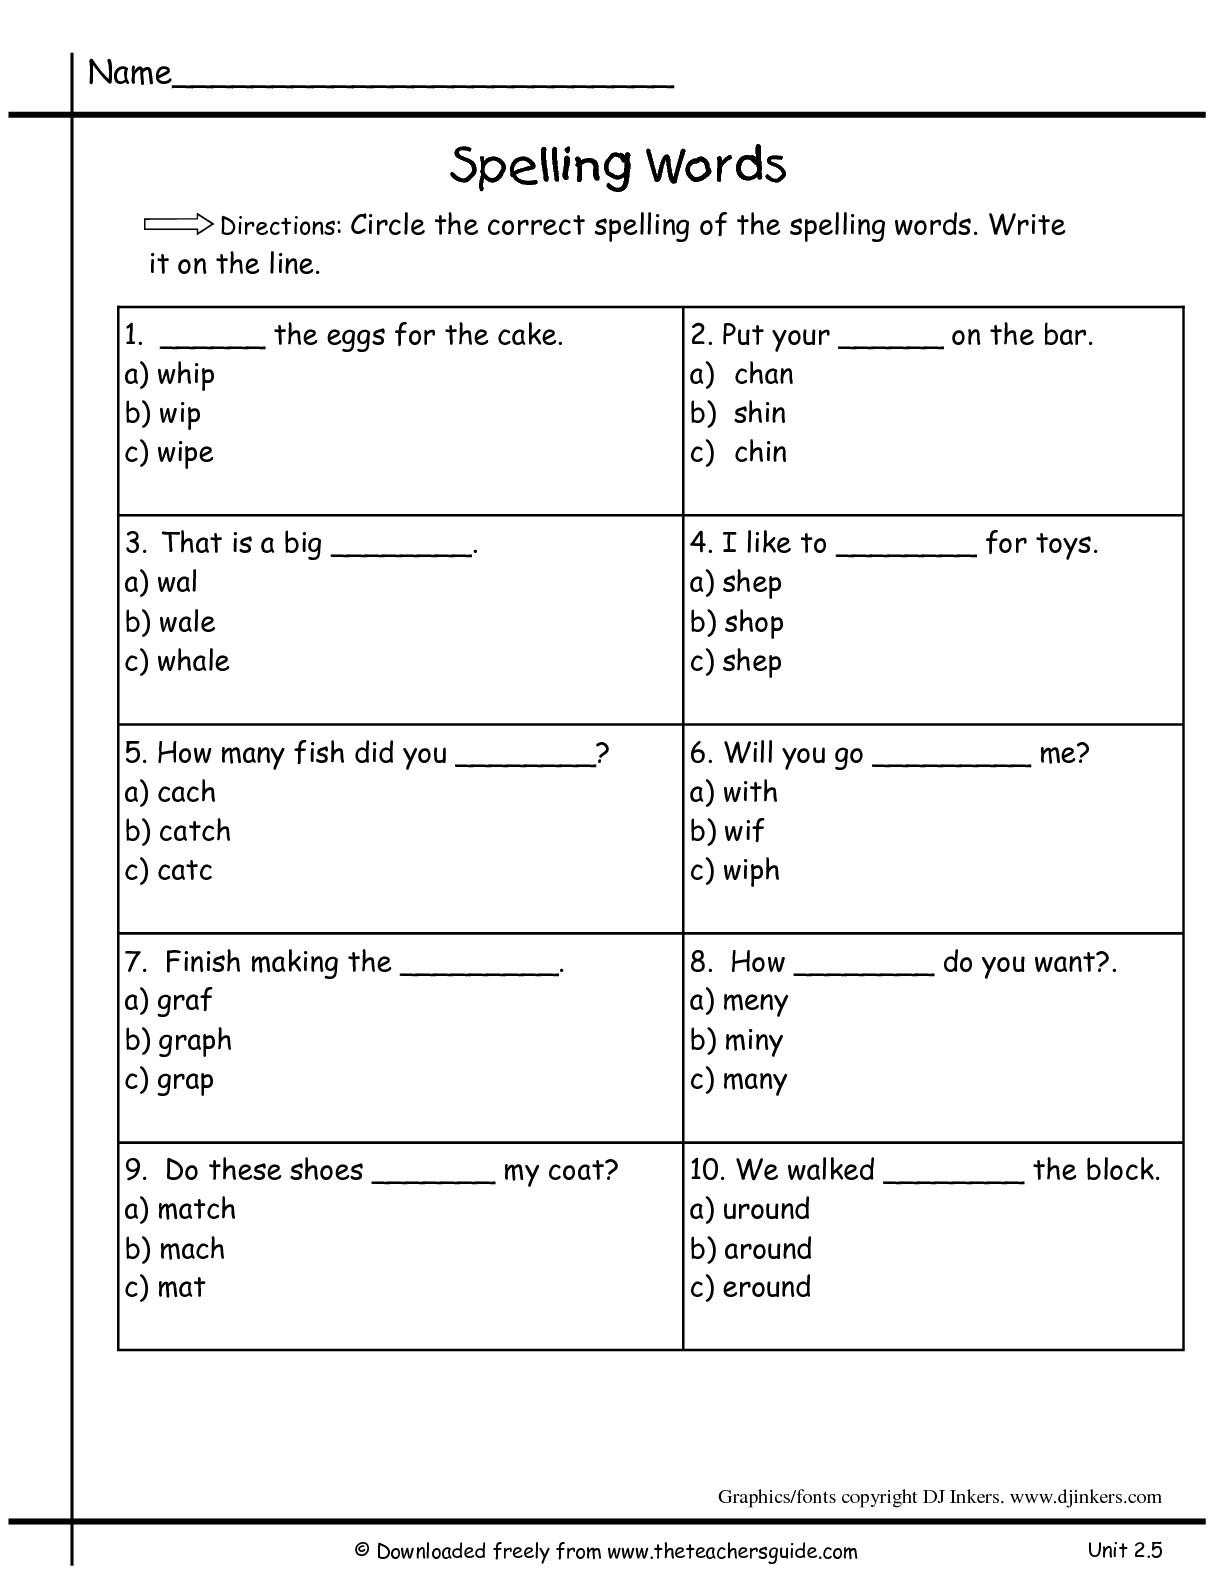 16-practice-spelling-words-worksheets-worksheeto